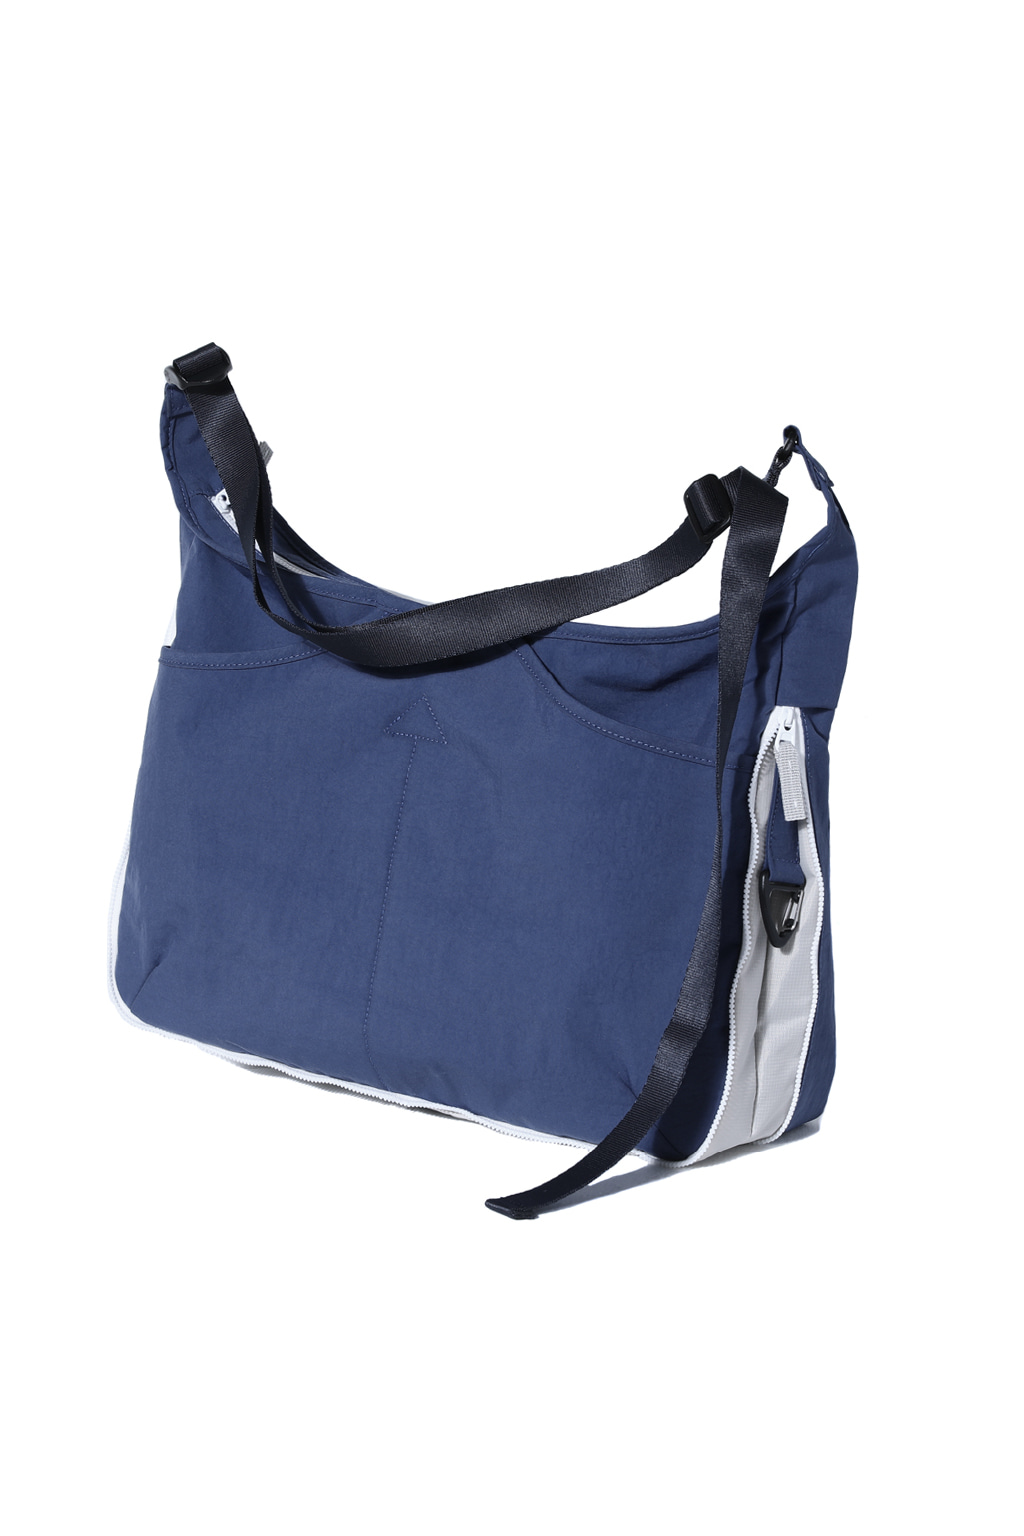 NYLON GLAM MESSENGER BAG [BLUE]